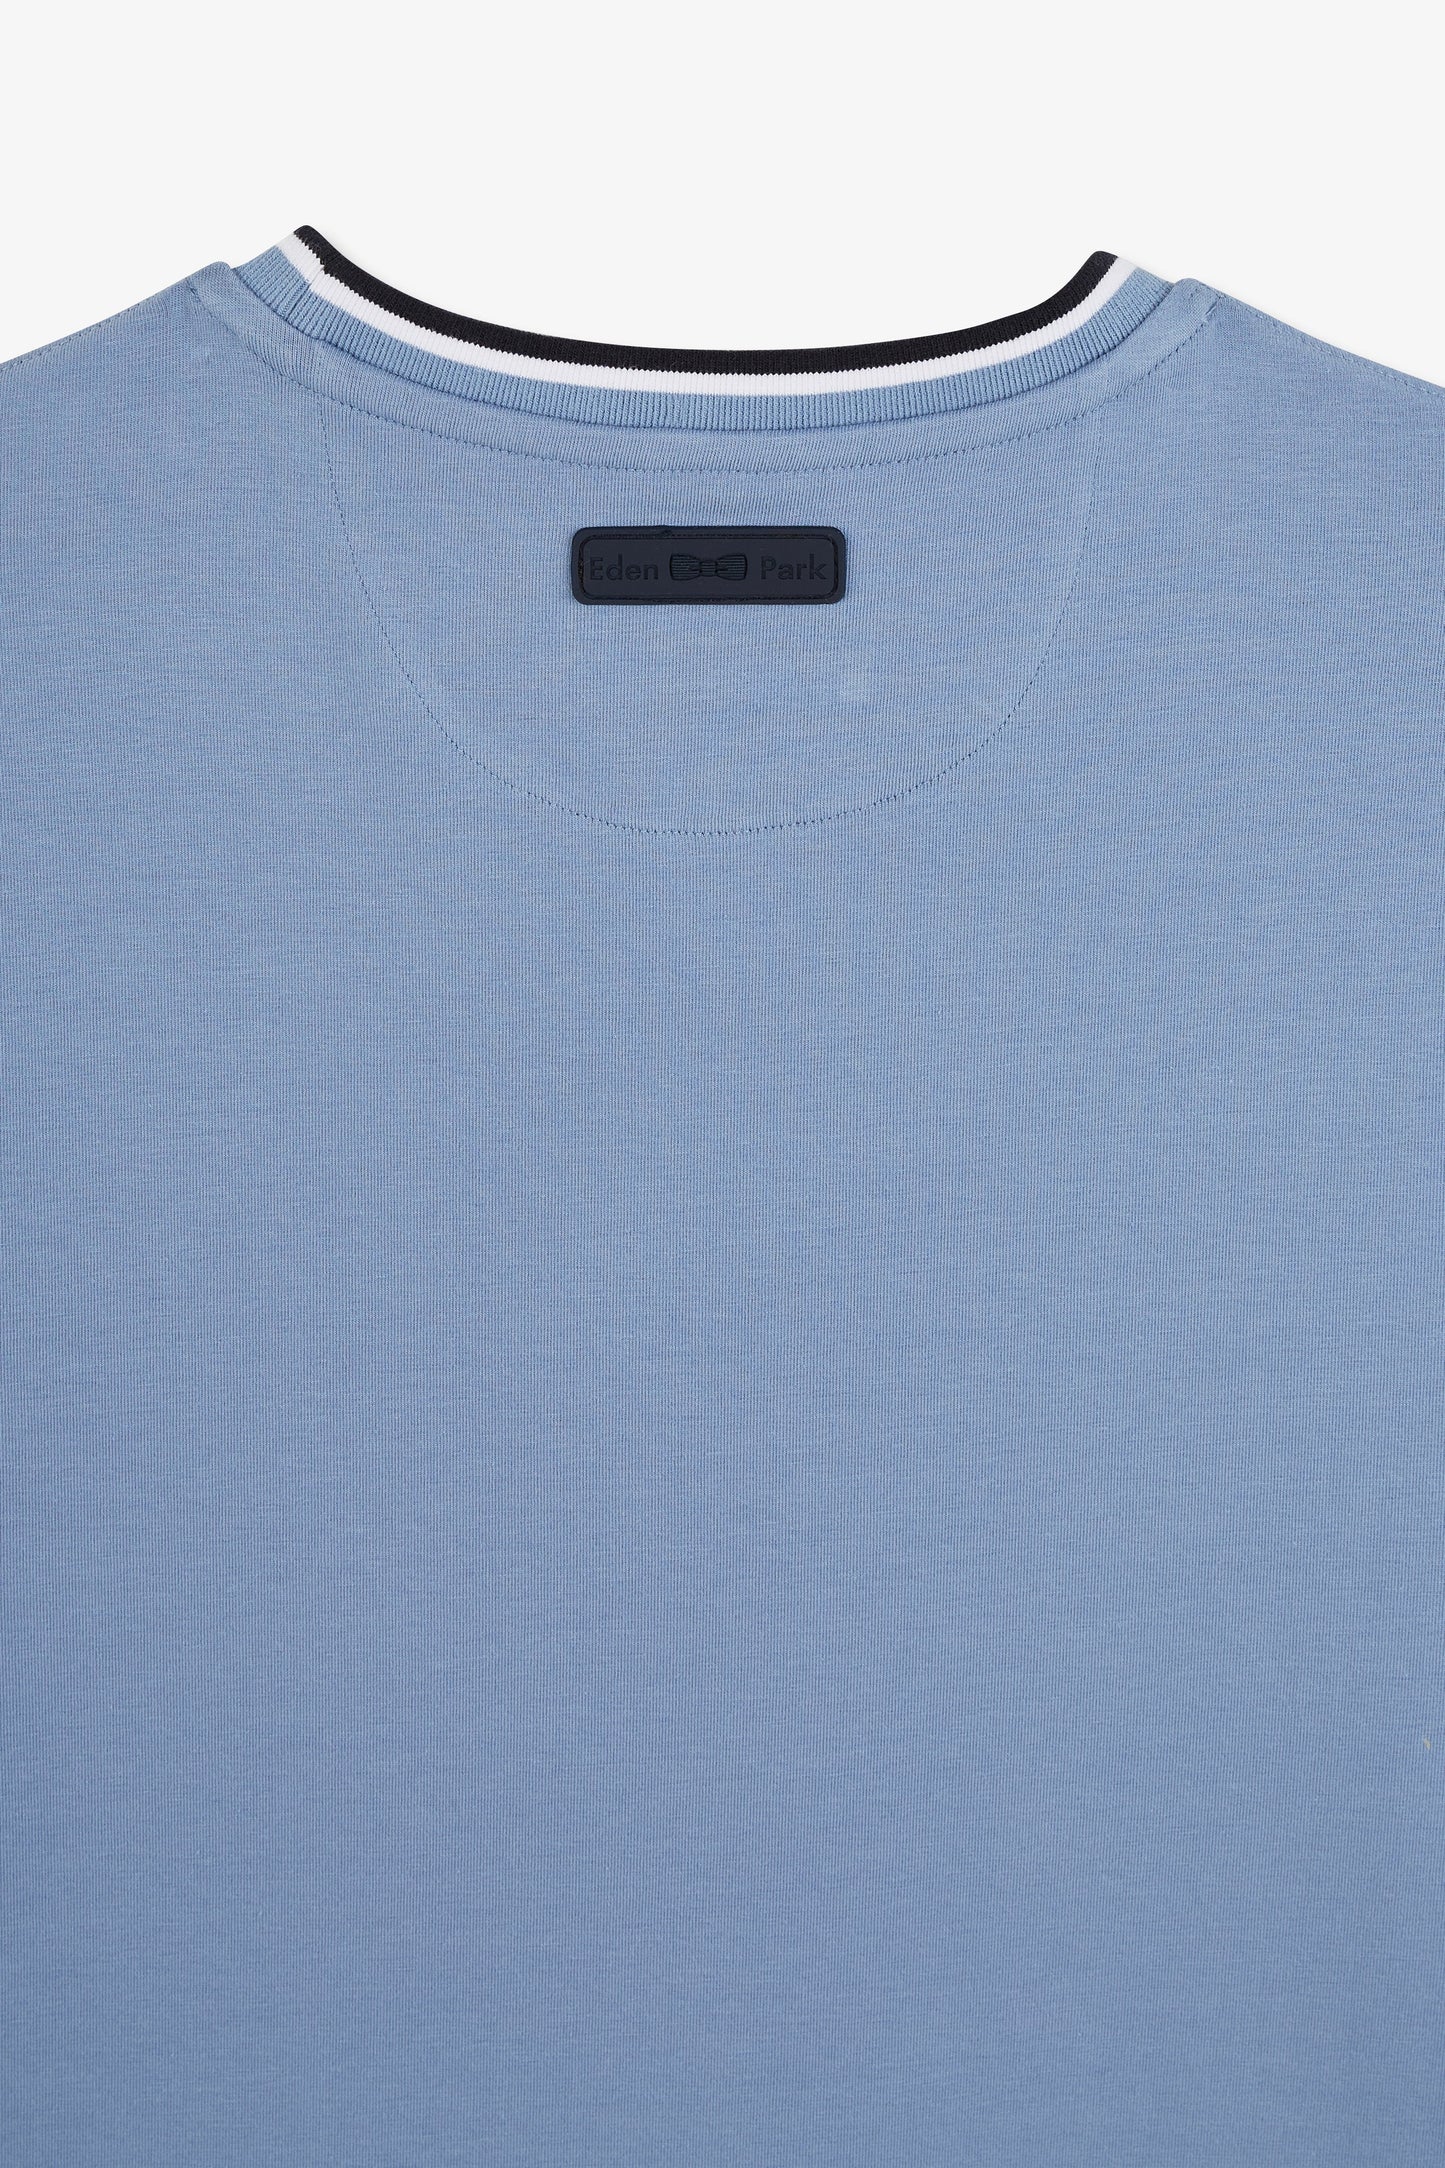 T-shirt bleu uni à manches courtes - Image 7